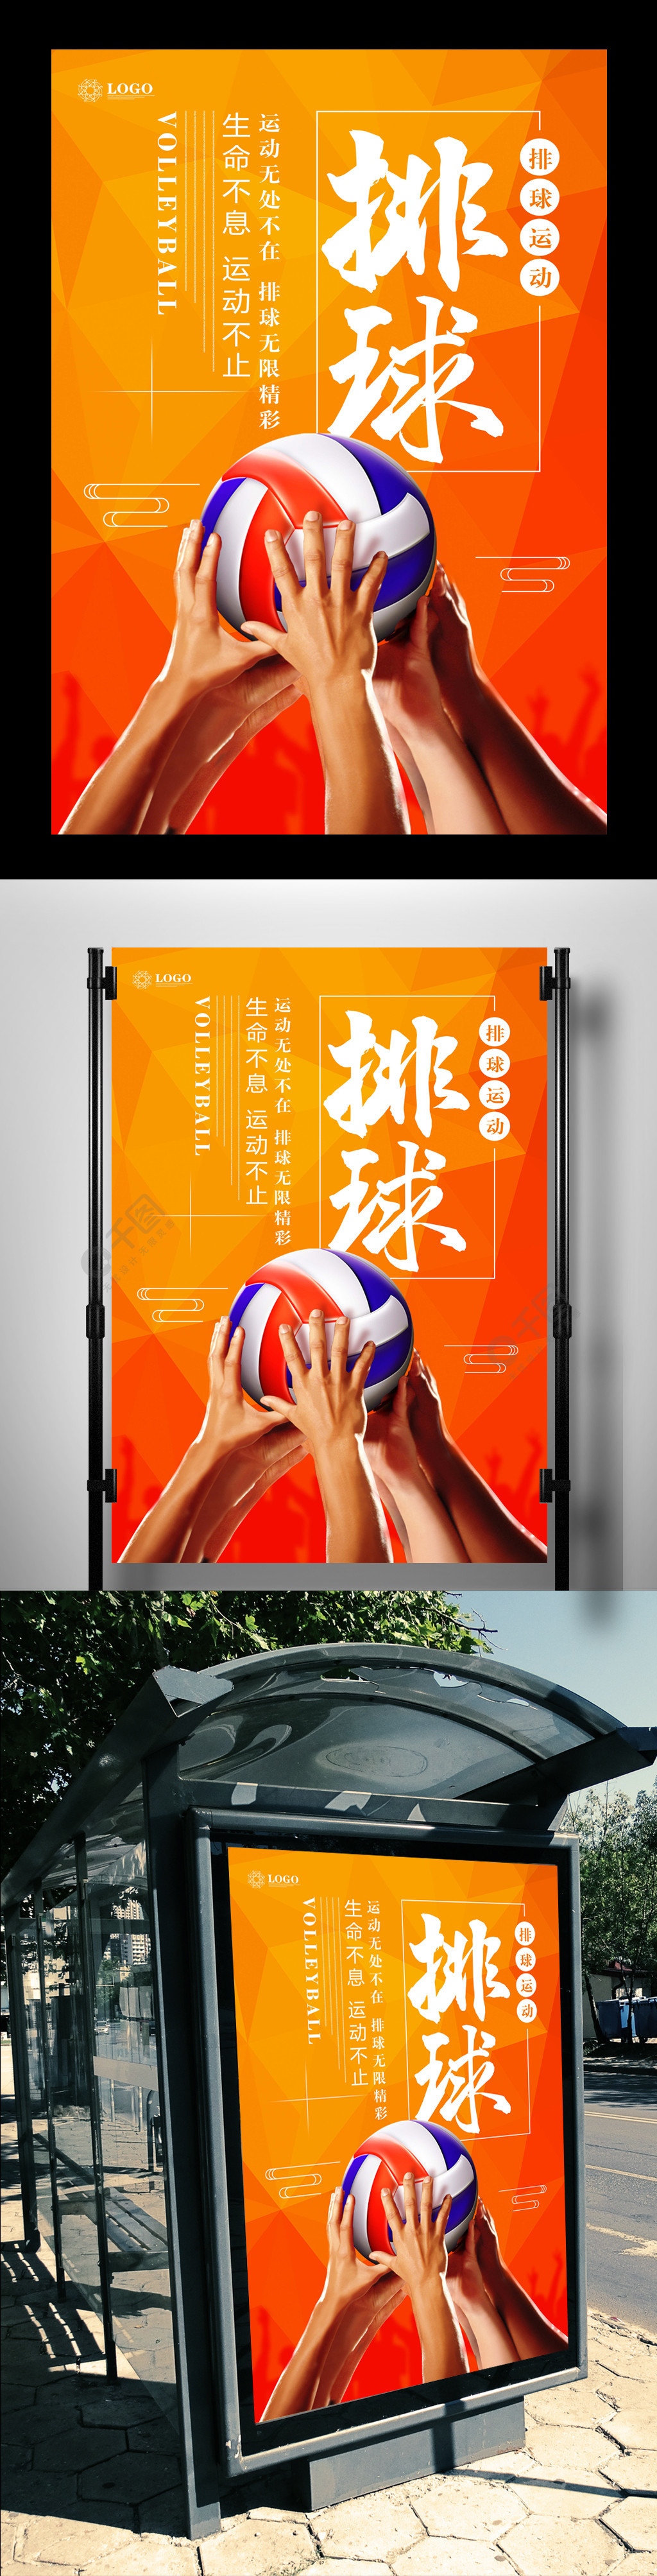 排球争霸赛体育运动海报3年前发布